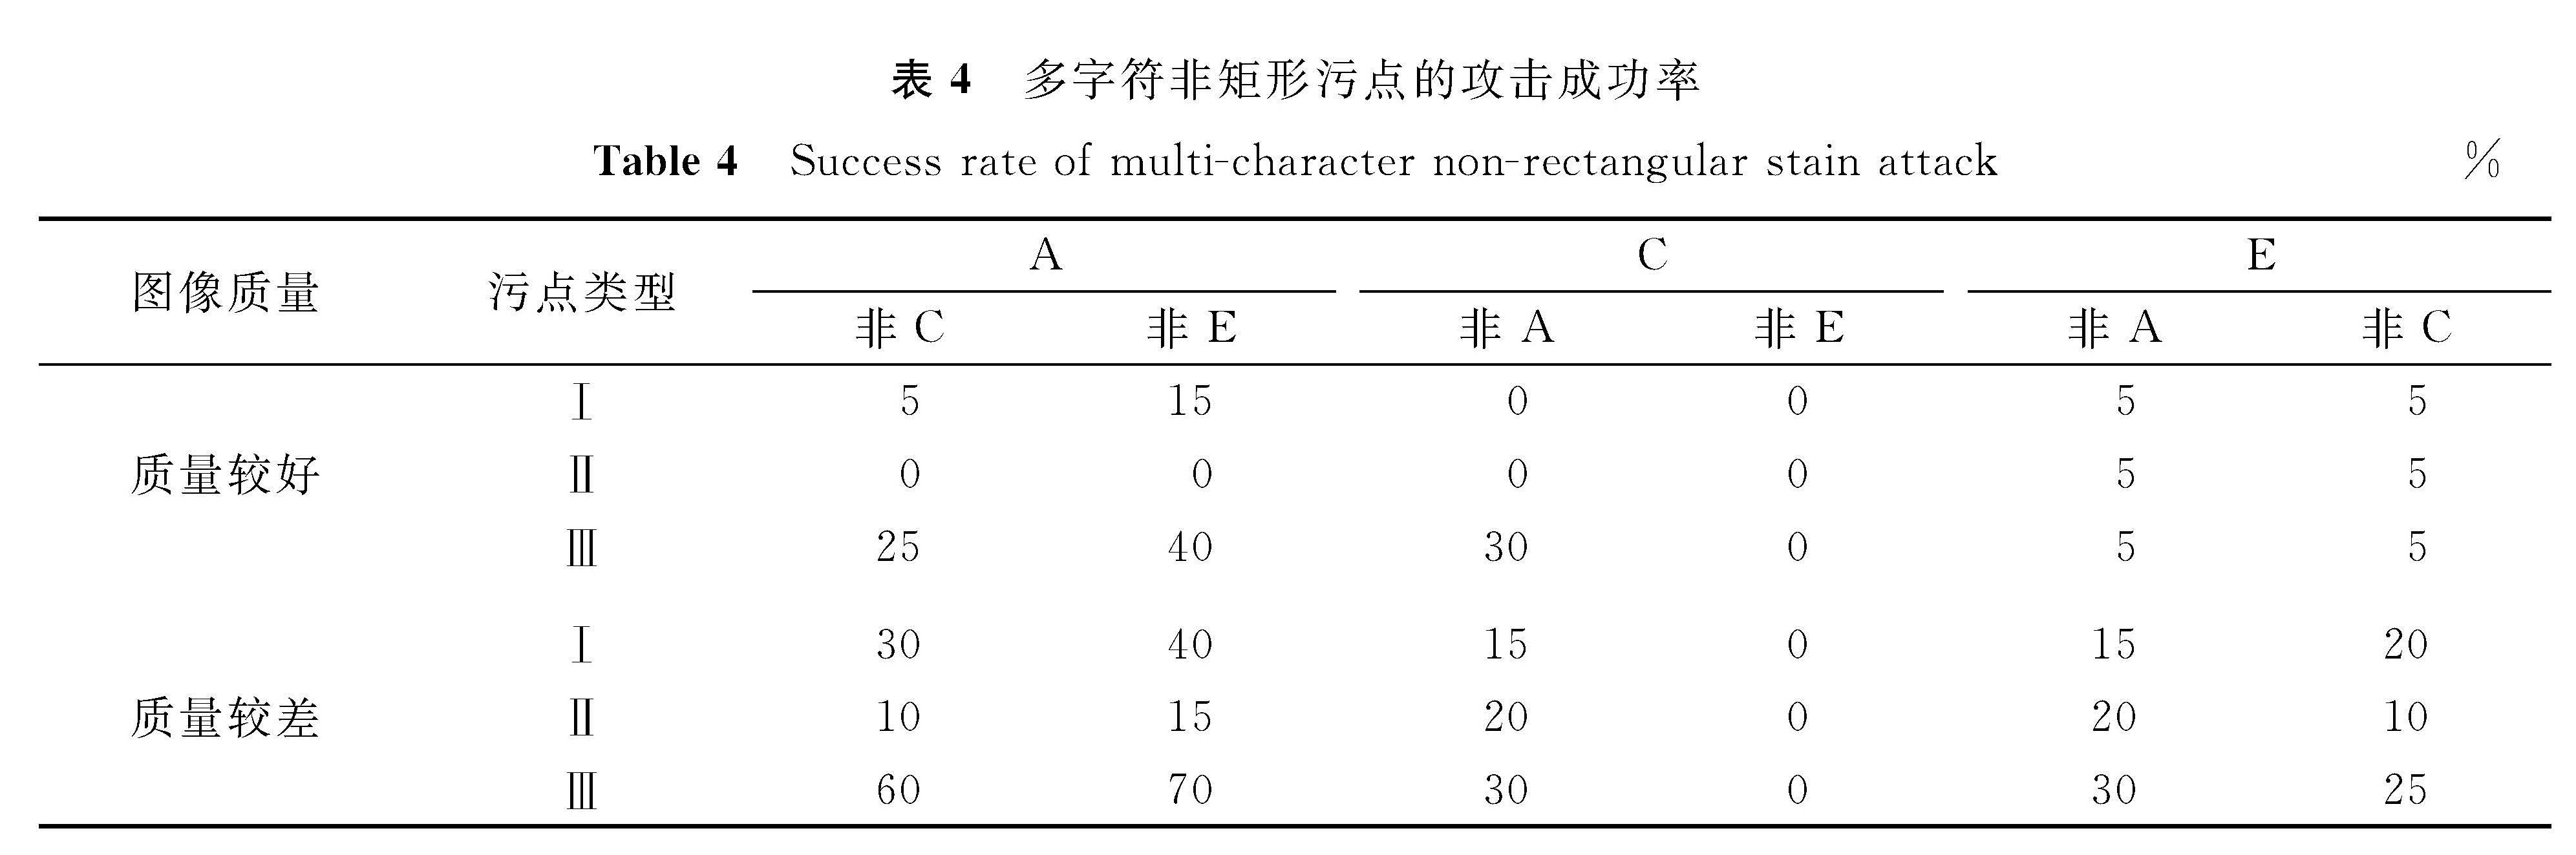 表4 多字符非矩形污点的攻击成功率<br/>Table 4 Success rate of multi-character non-rectangular stain attack%